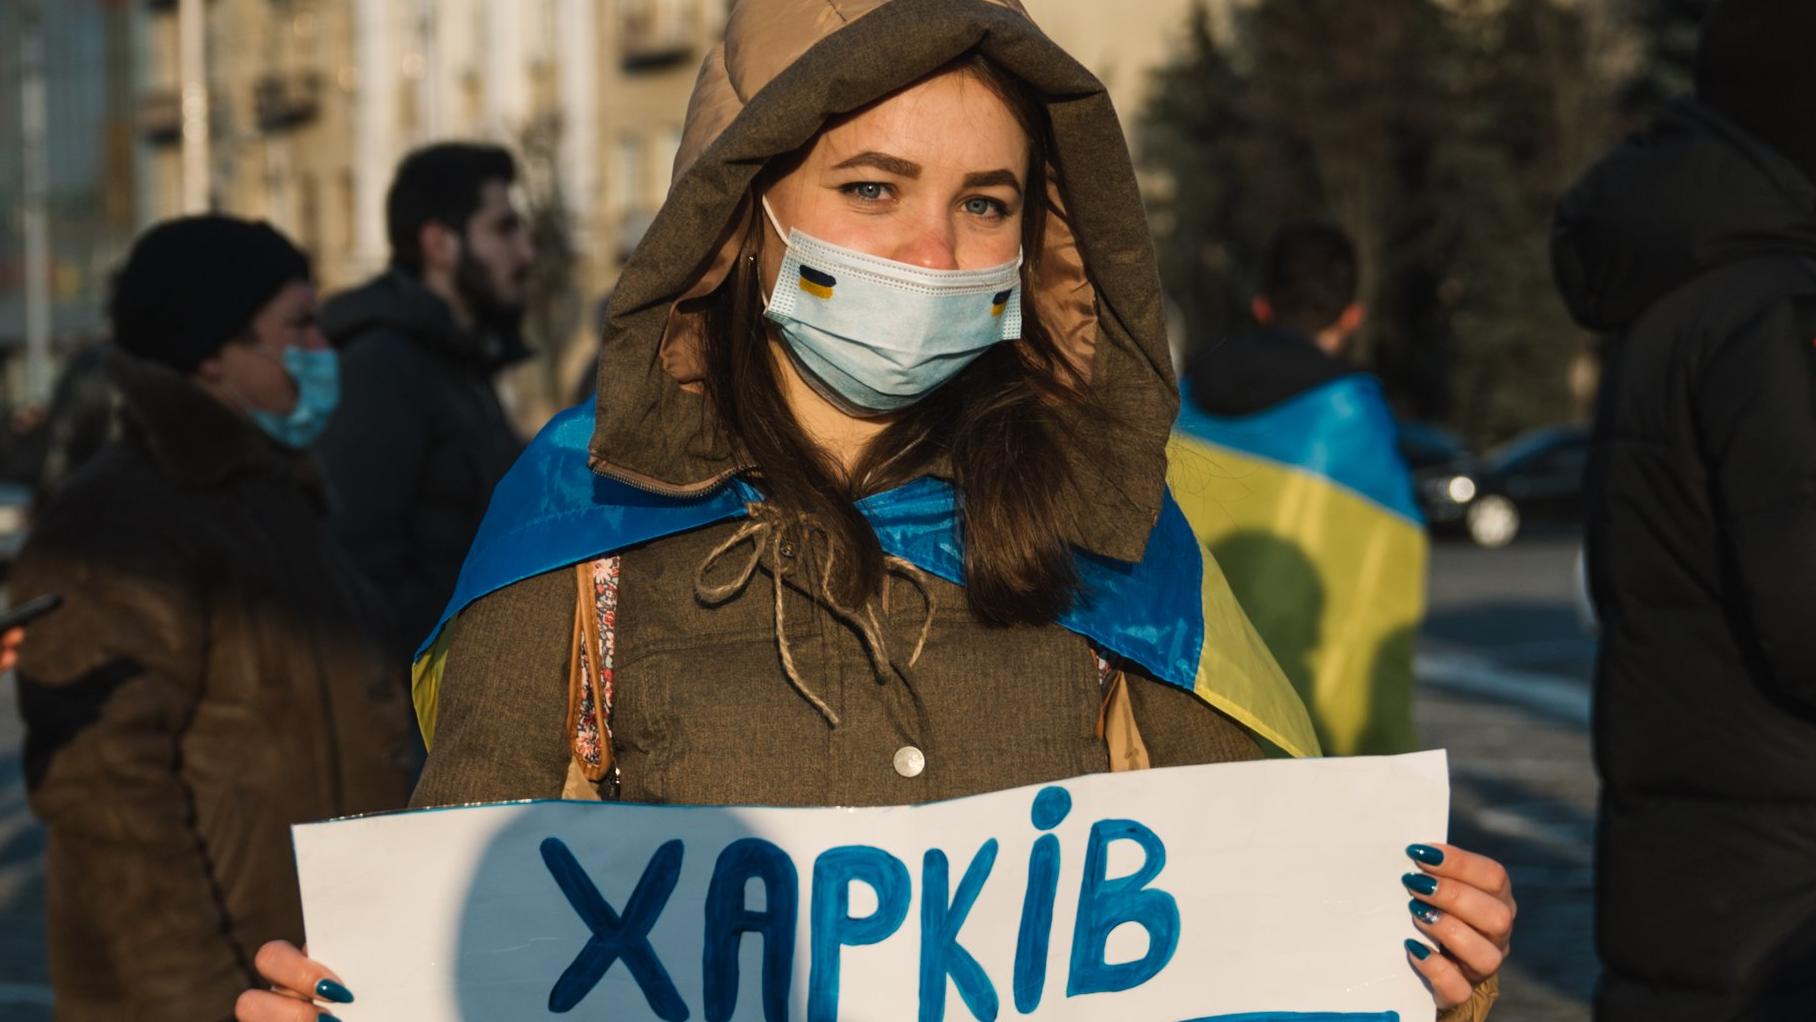 Ołesia Dekusz w zimowej kurtce i maseczce trzyma plakat "Charkiv Ukraina"